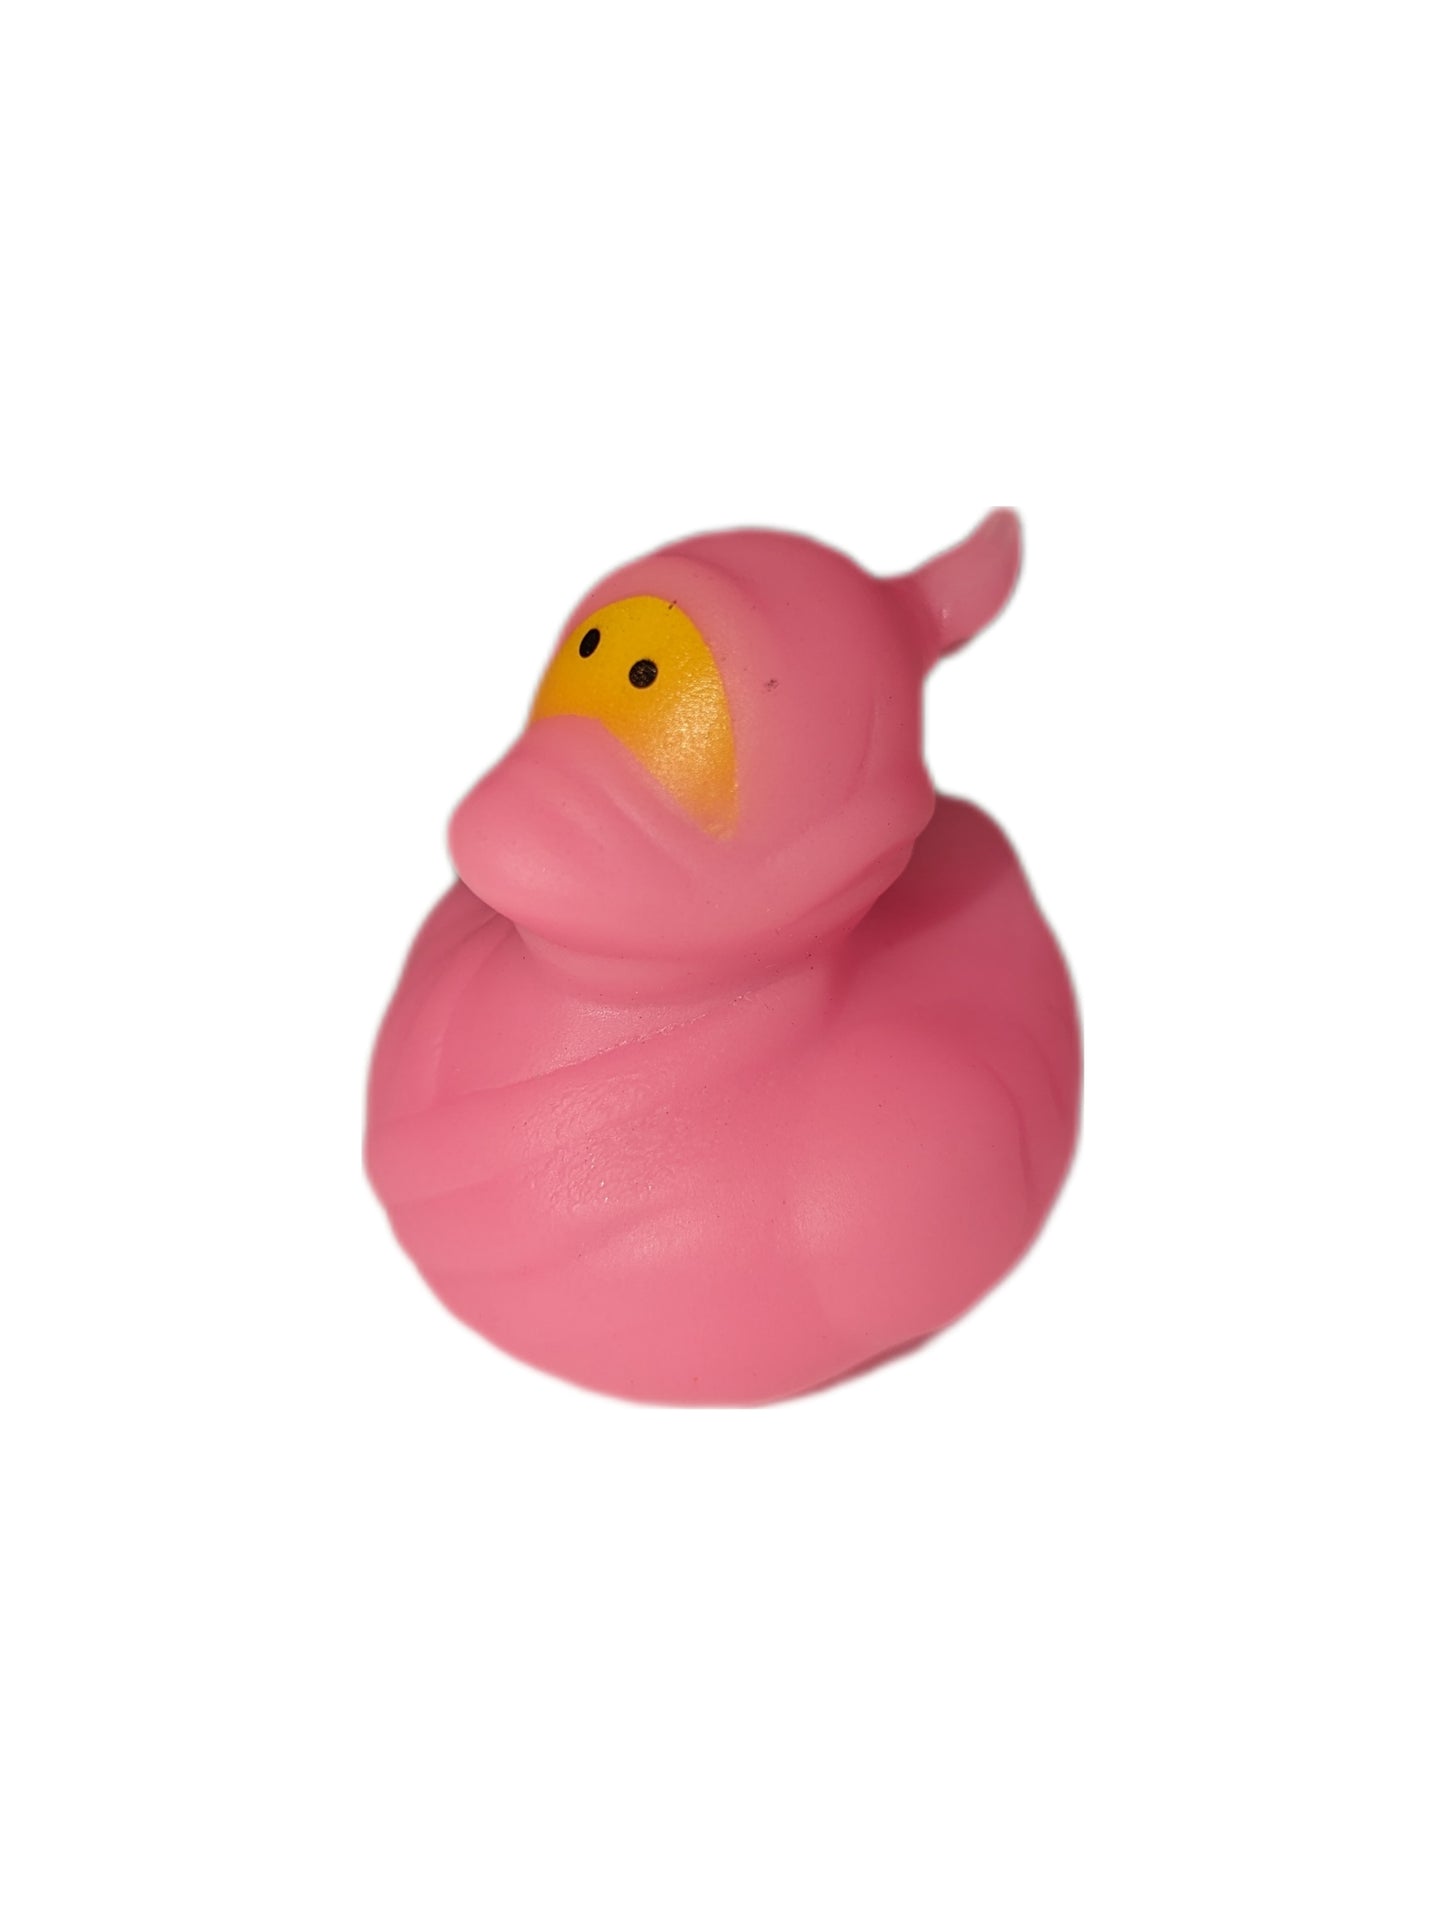 10 Pink Ninjas- 2" Rubber Ducks